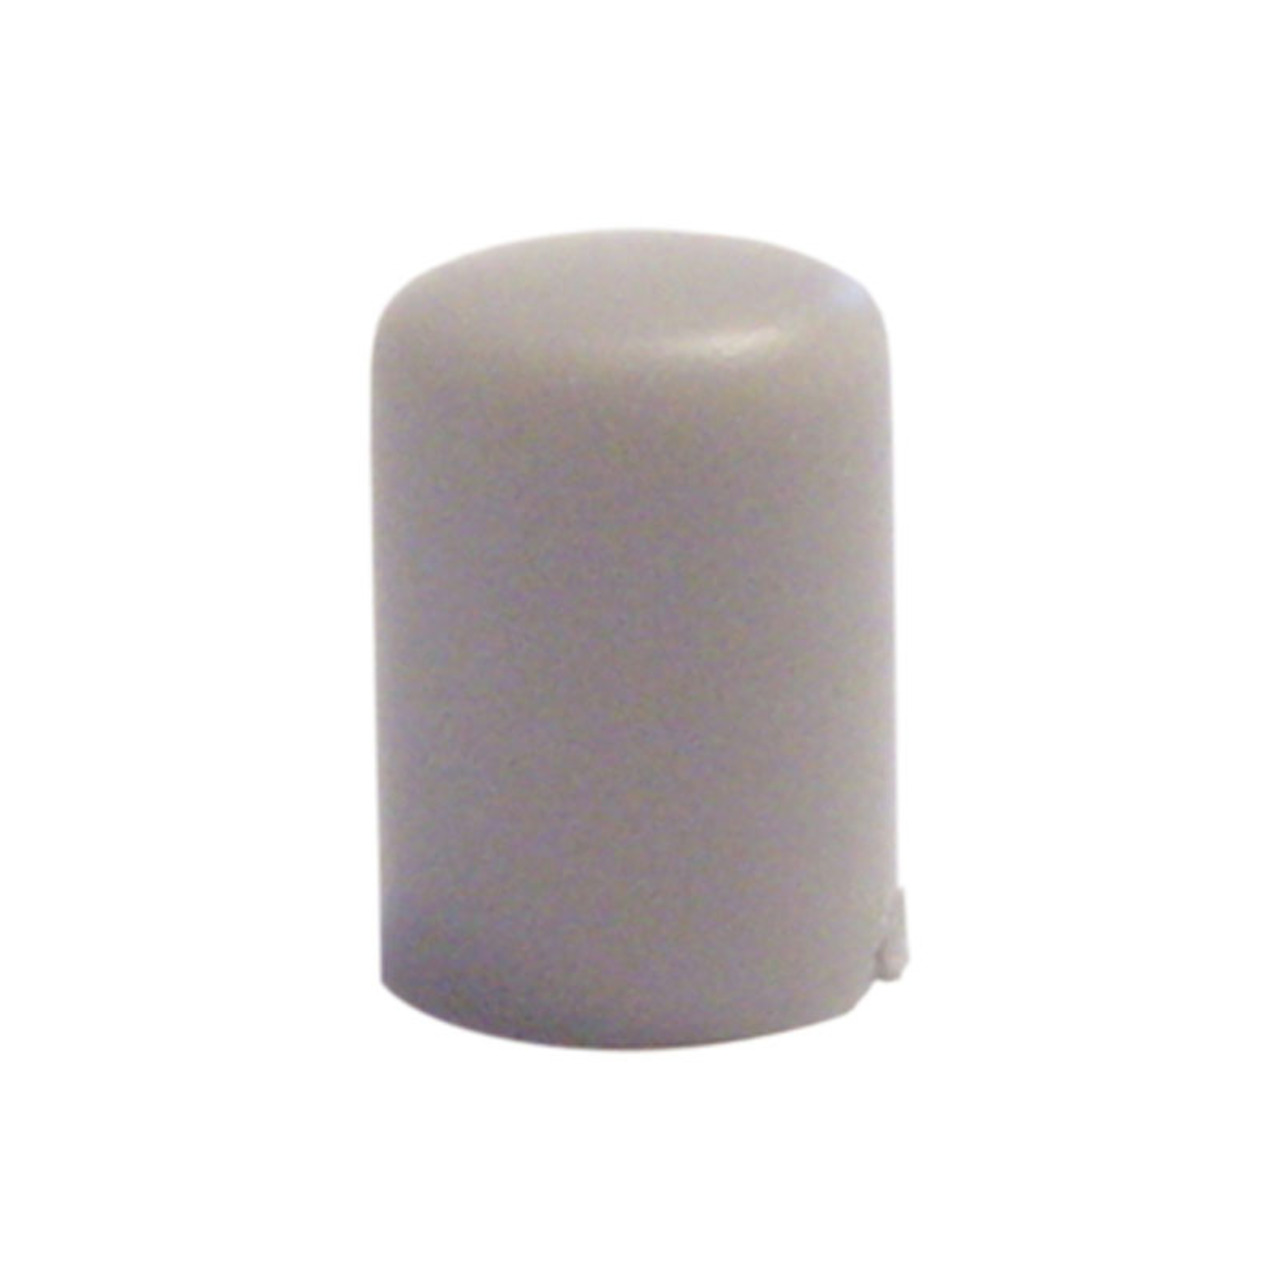 Tastknopf- grau- 10 x 7-4 mm Durchmesser